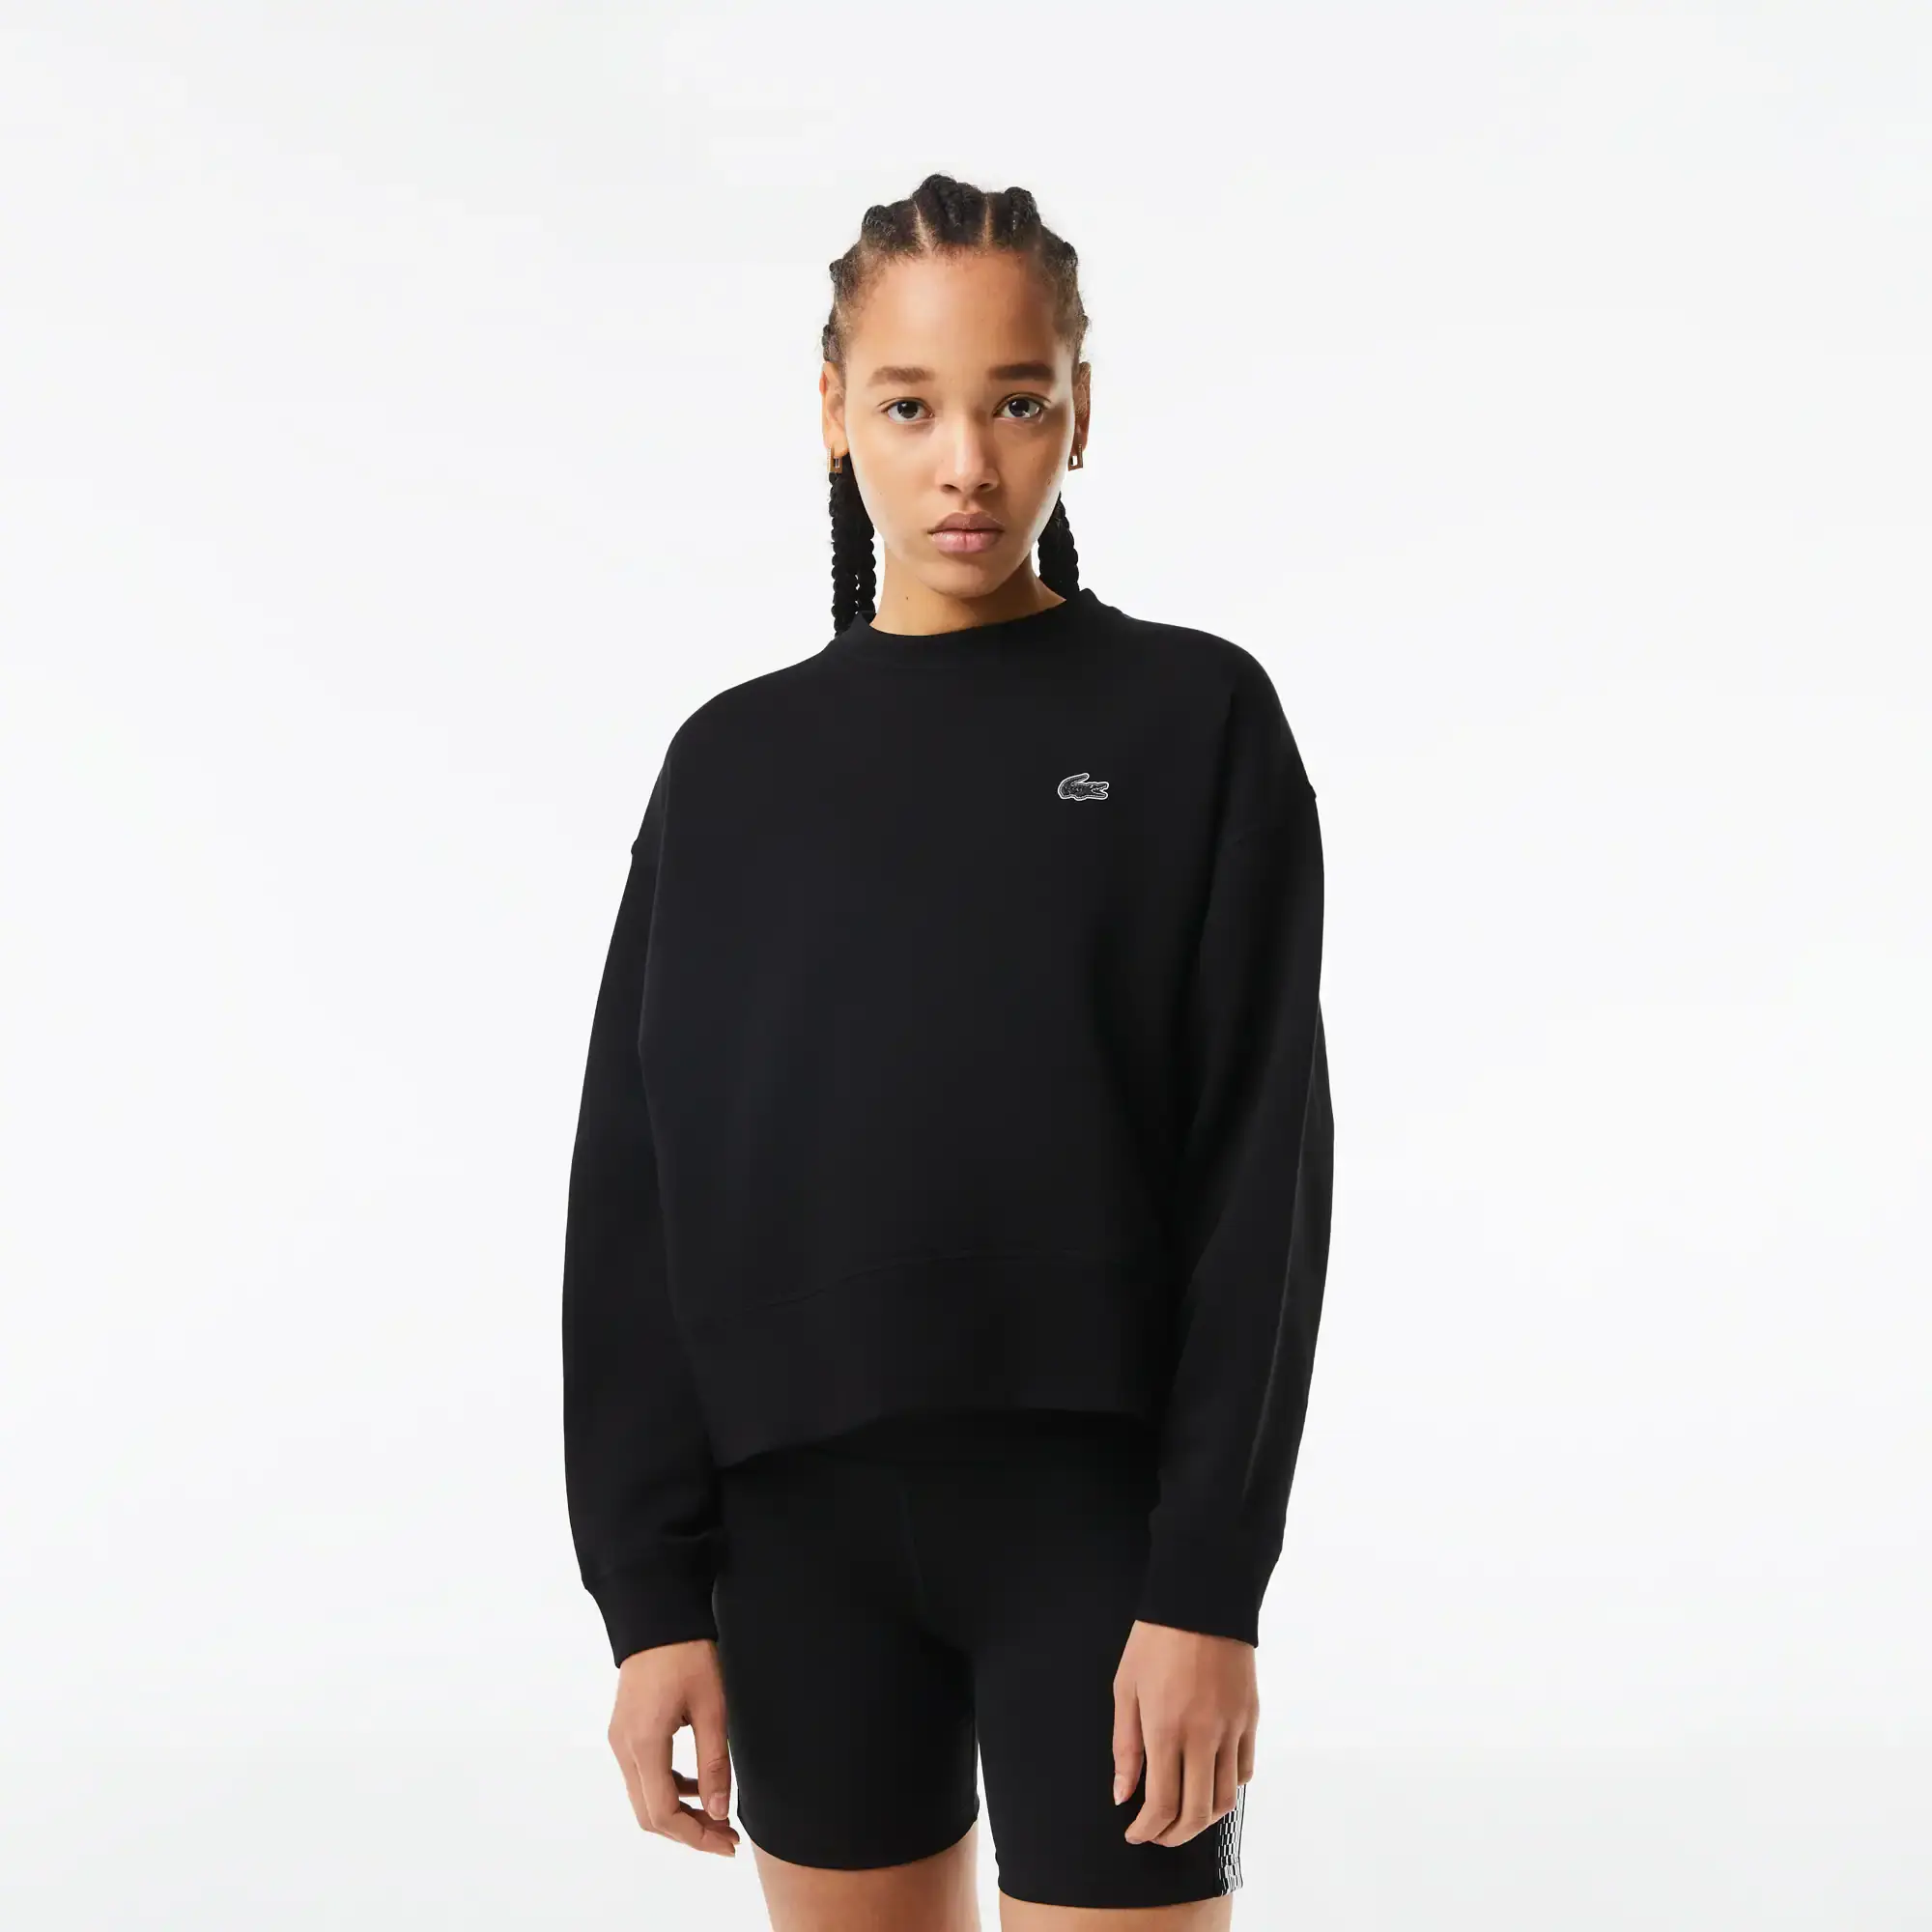 Lacoste Women’s Print Back Sweatshirt. 1